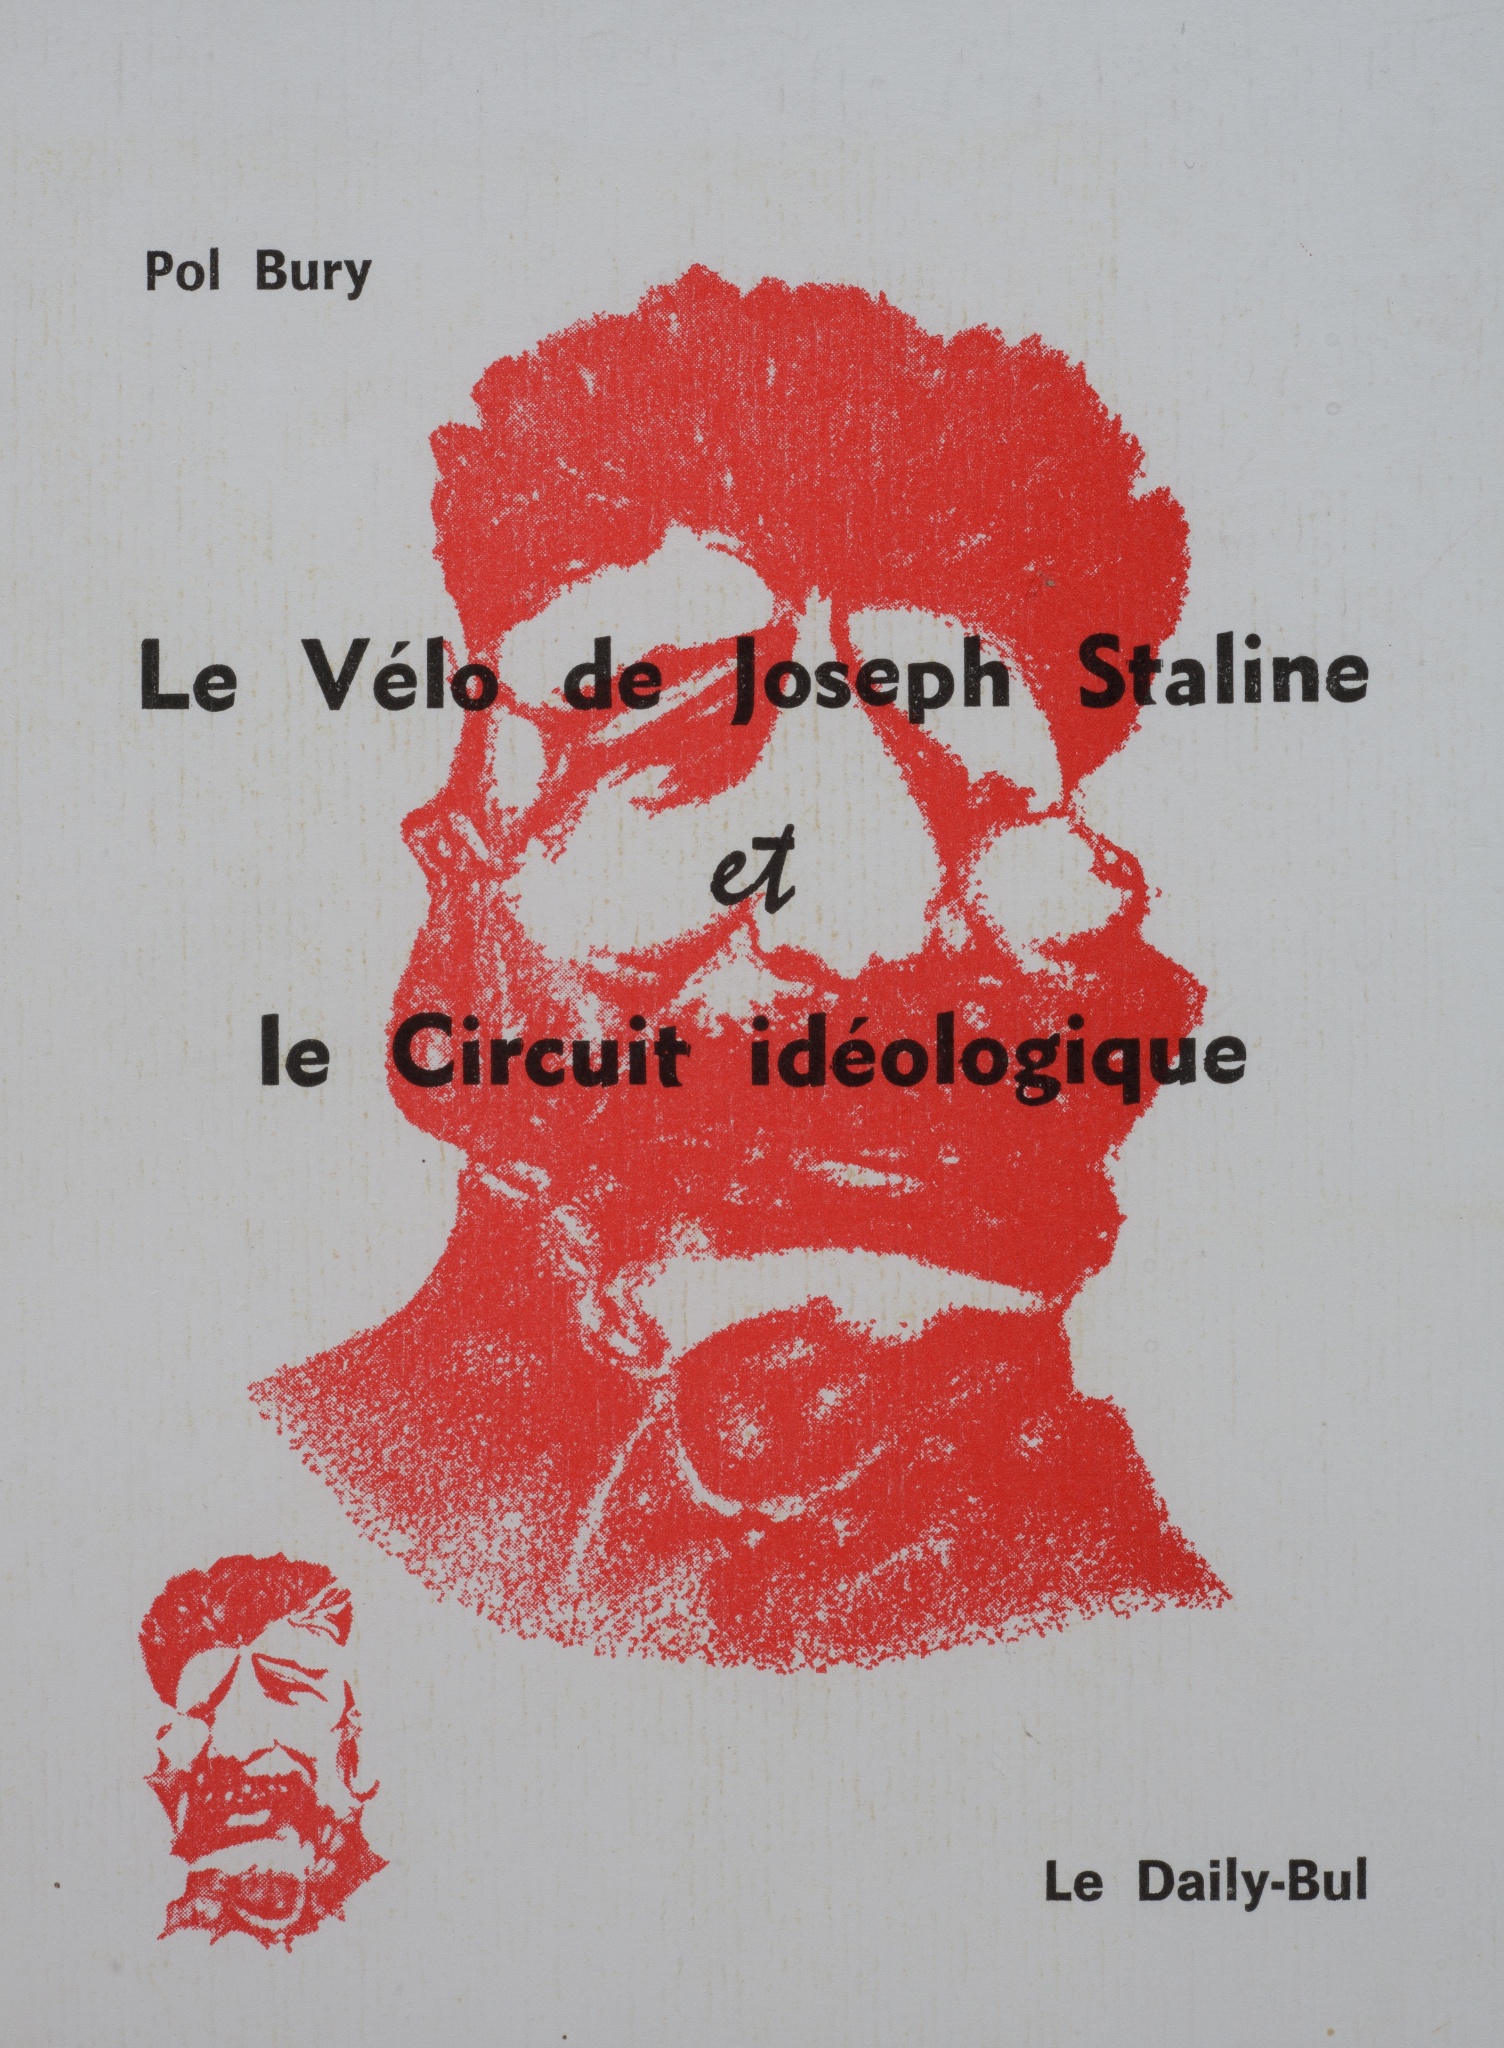 Le vélo de Joseph Staline et le Circuit idéologique